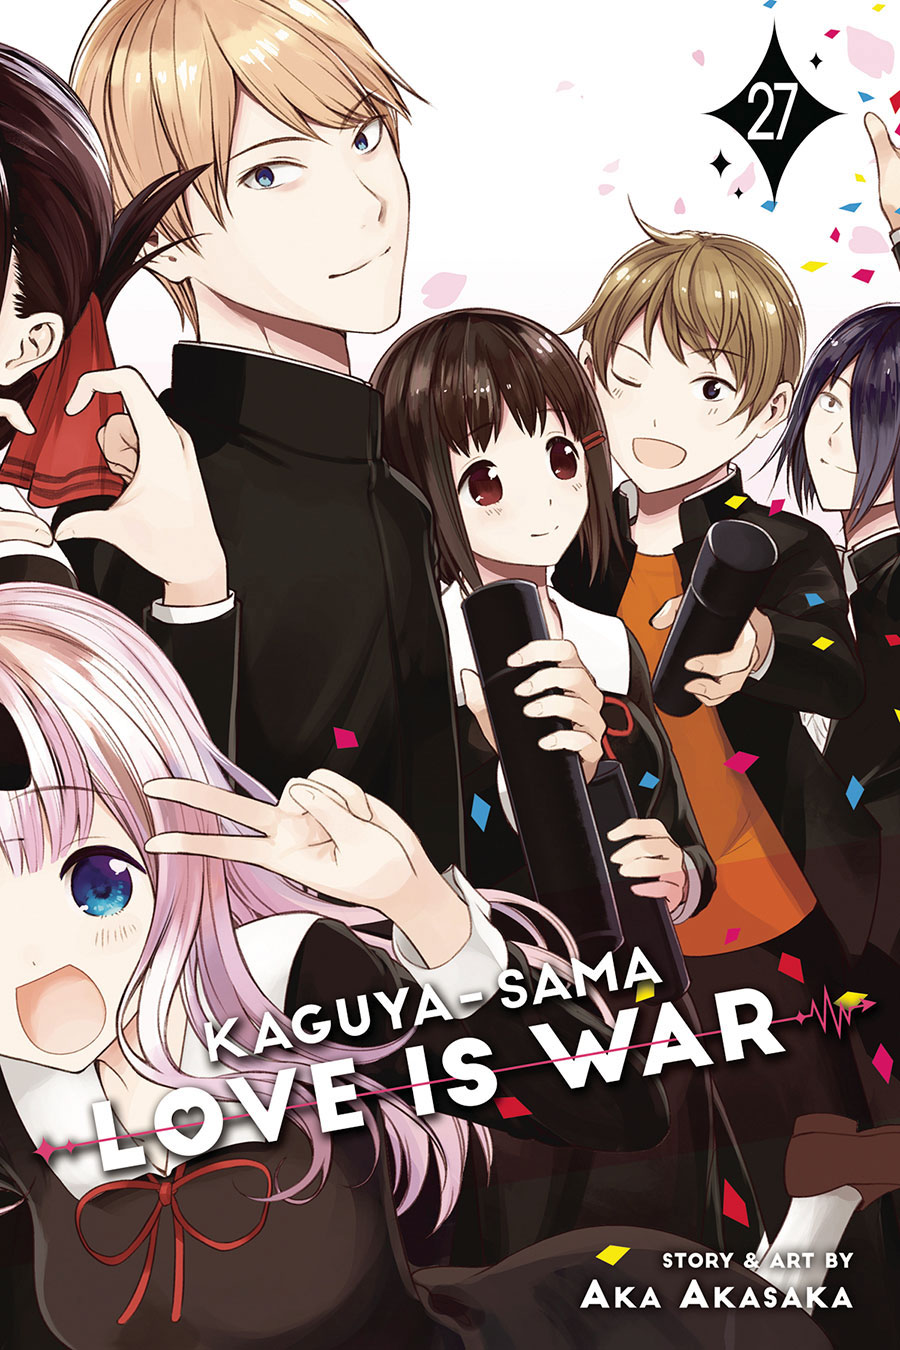 Kaguya-Sama Love Is War Vol 27 GN